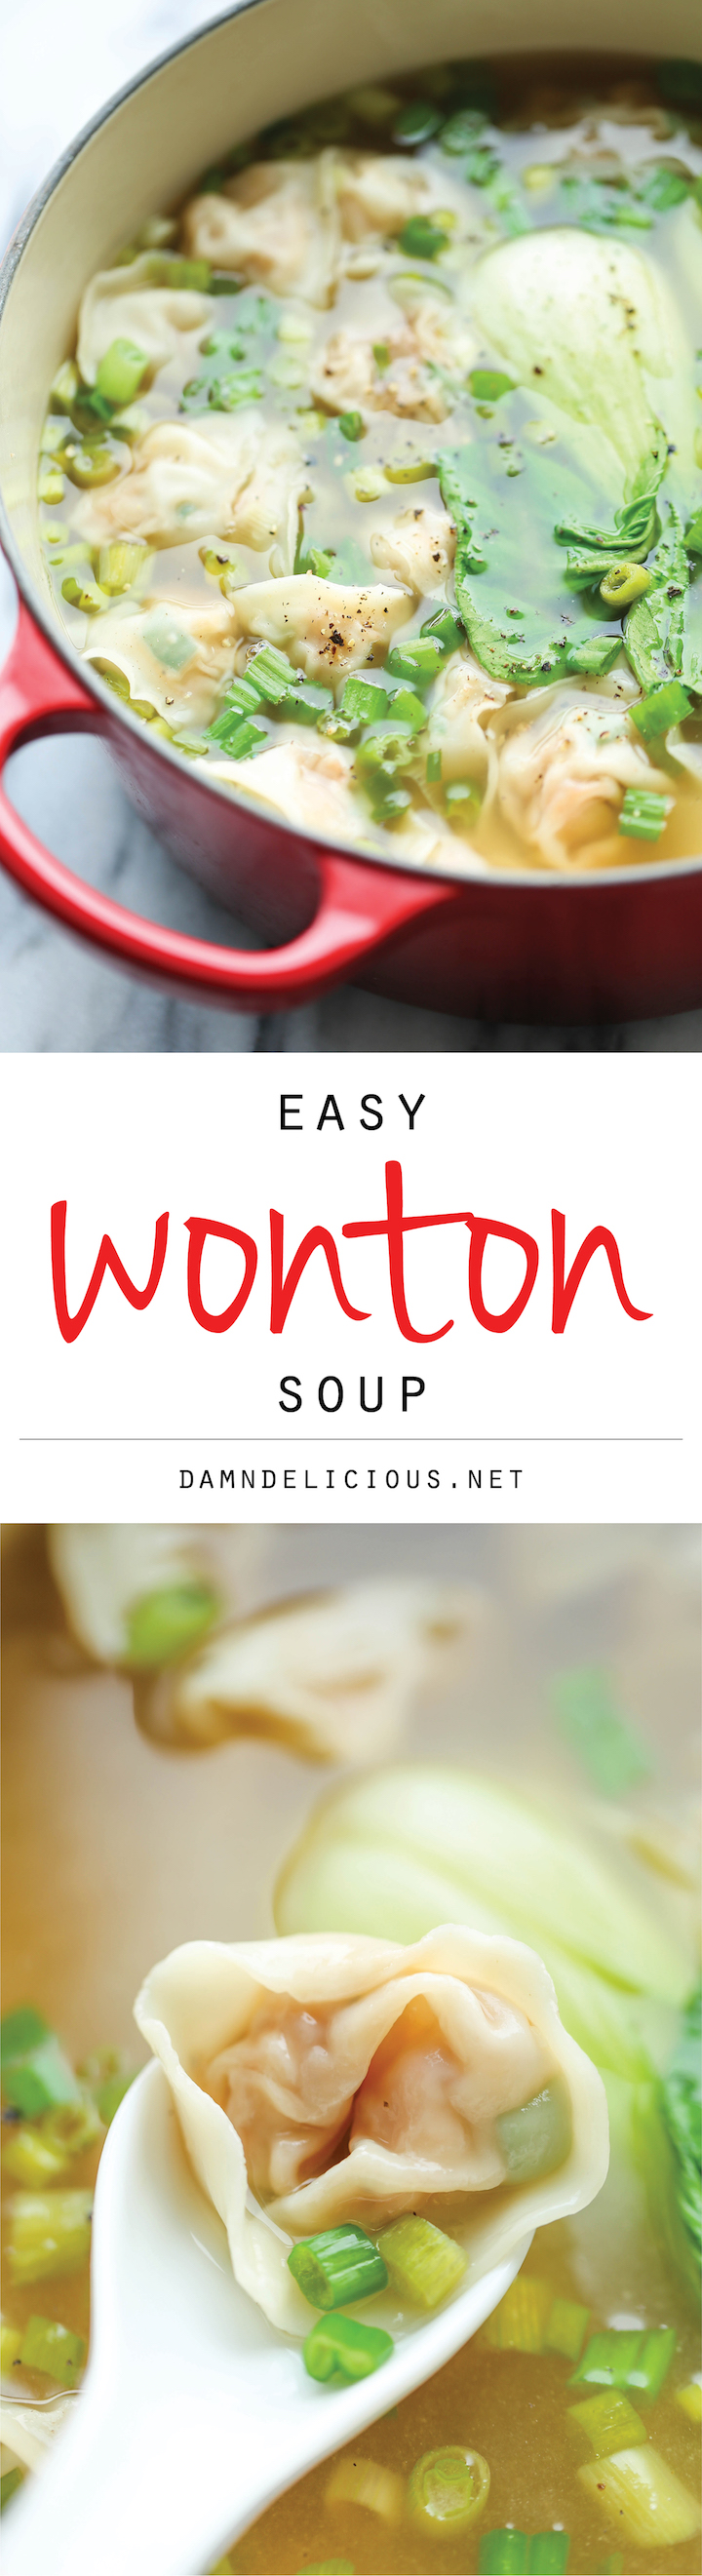 Wonton Soup Damn Delicious